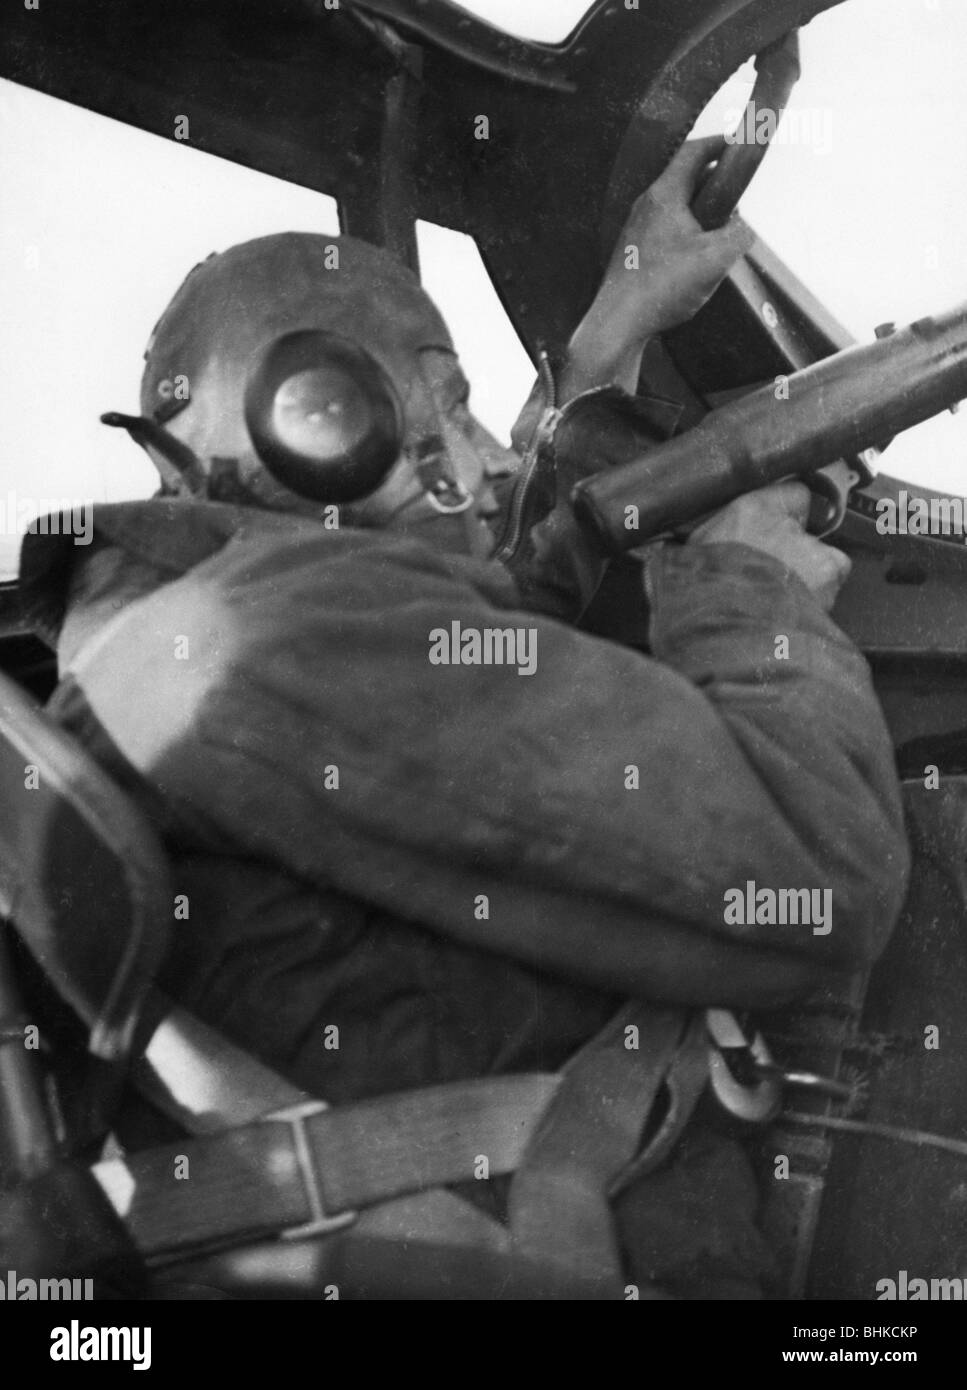 Événements, seconde Guerre mondiale / seconde Guerre mondiale, guerre aérienne, avions, détails / intérieurs, tir arrière d'un bombardier allemand Dornier Do 17 à son machinegun, vers 1940, Banque D'Images